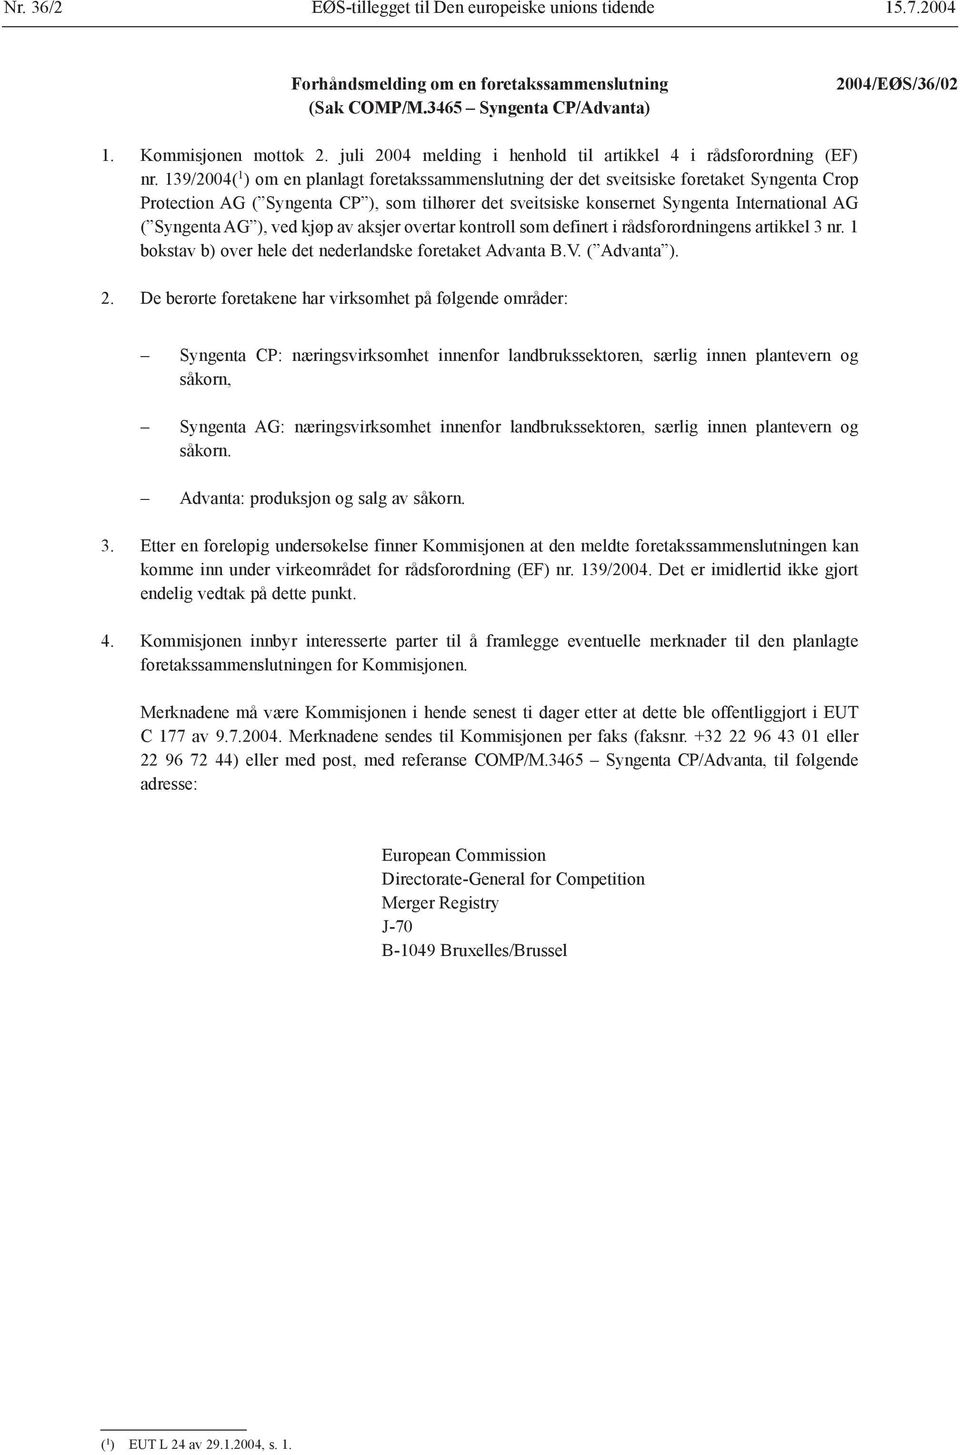 139/2004( 1 ) om en planlagt foretakssammenslutning der det sveitsiske foretaket Syngenta Crop Protection AG ( Syngenta CP ), som tilhører det sveitsiske konsernet Syngenta International AG (